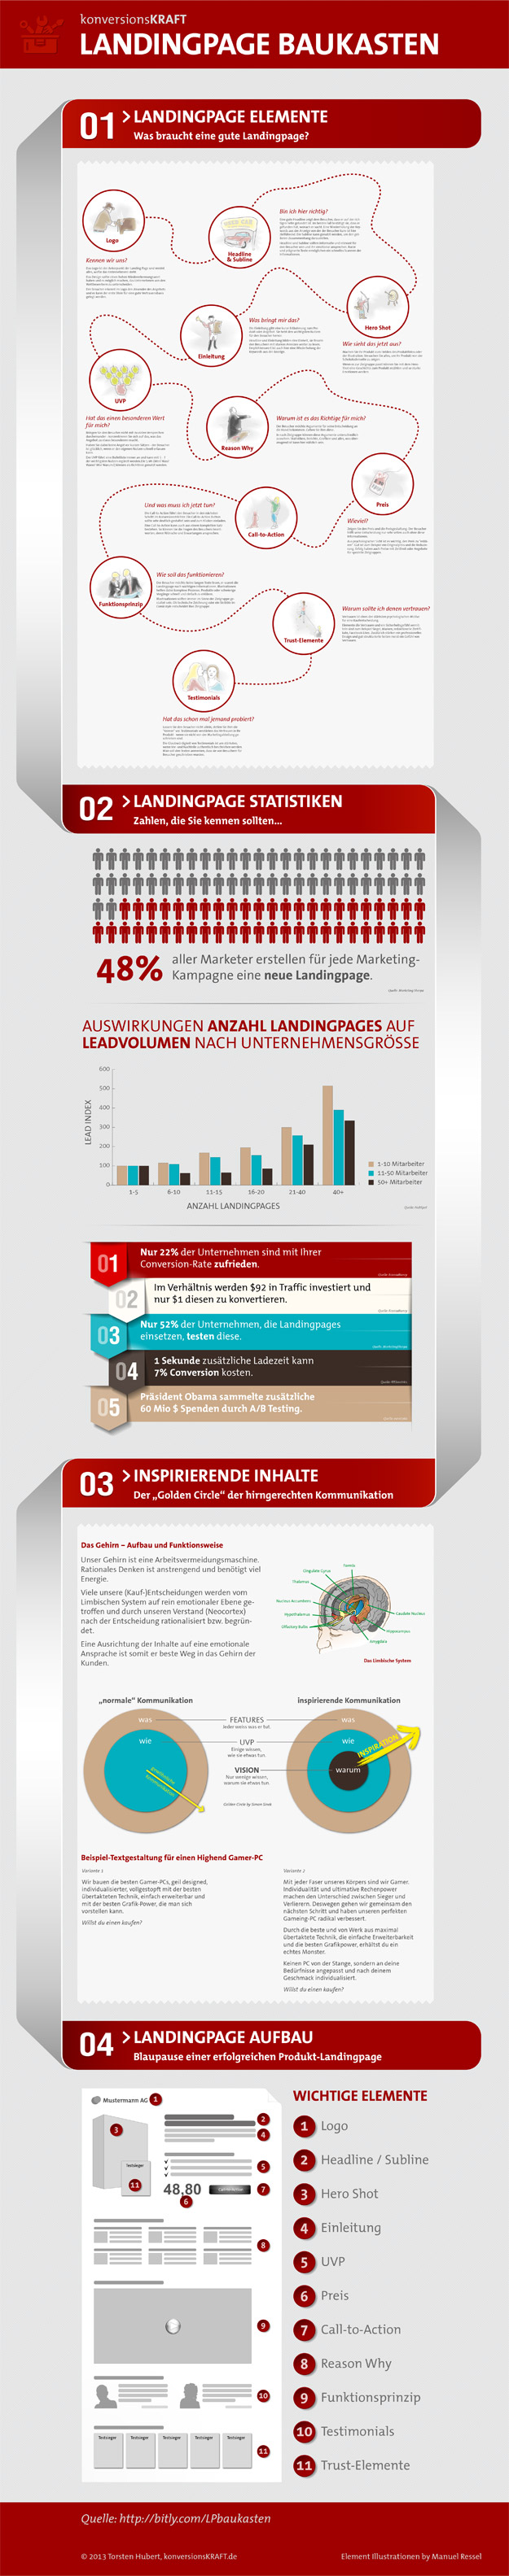 Landingpage Baukasten - Infografik